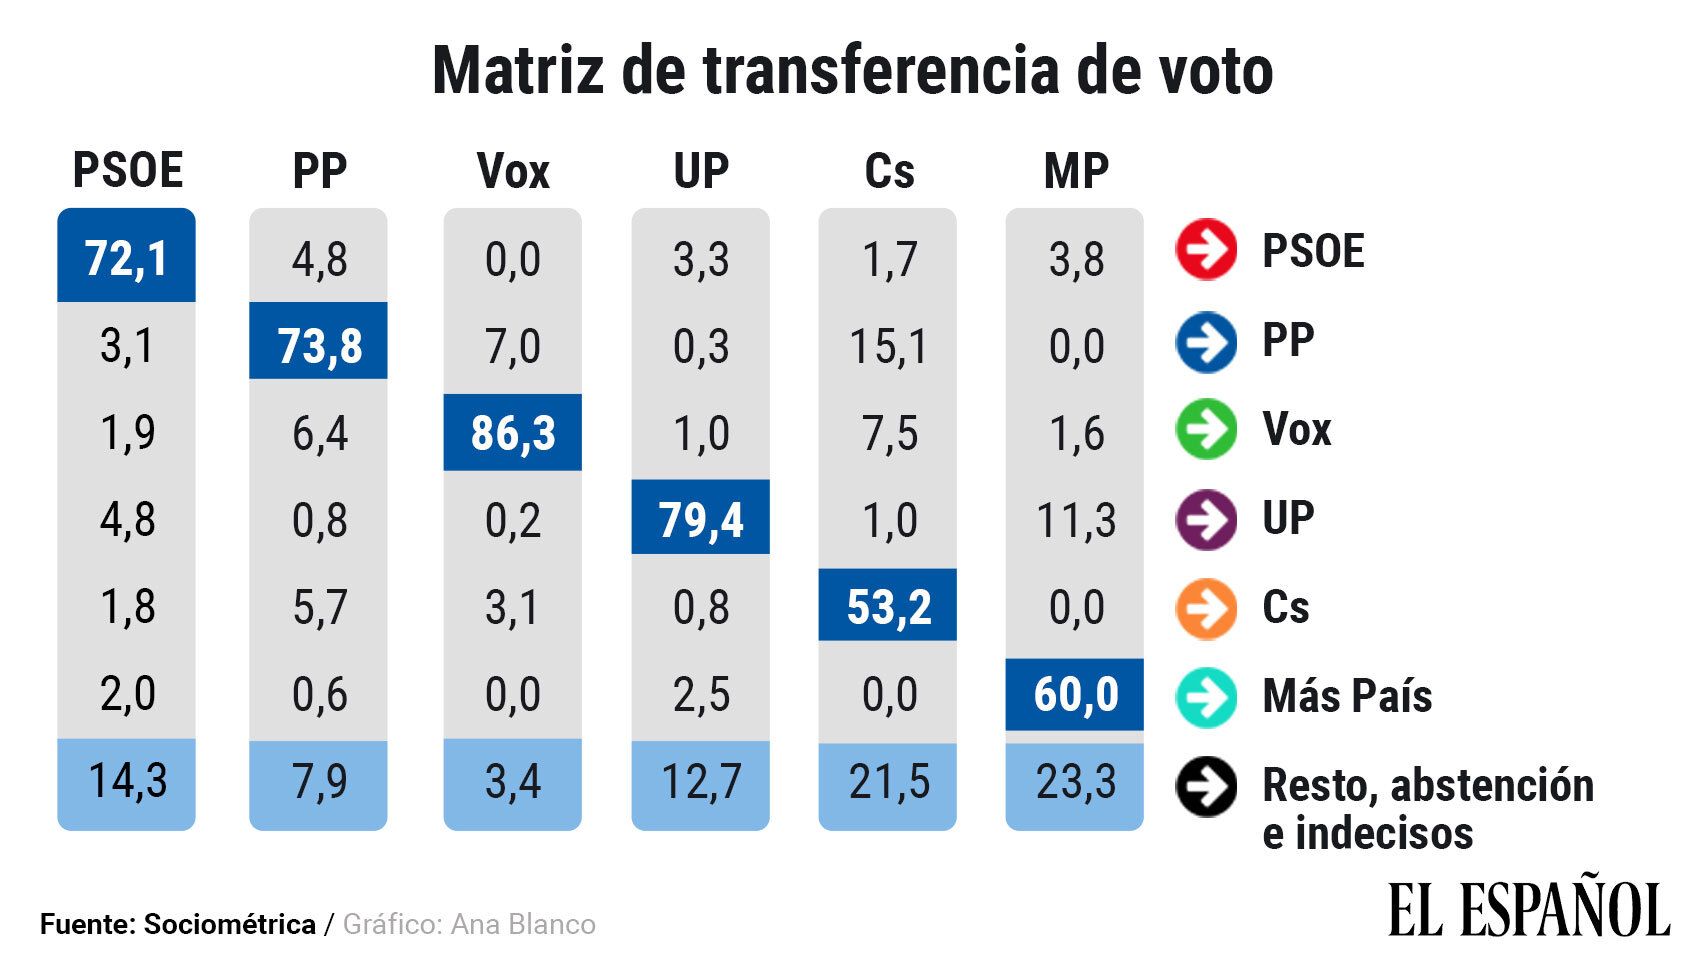 Matriz de transferencia de voto, según el último sondeo de SocioMétrica.